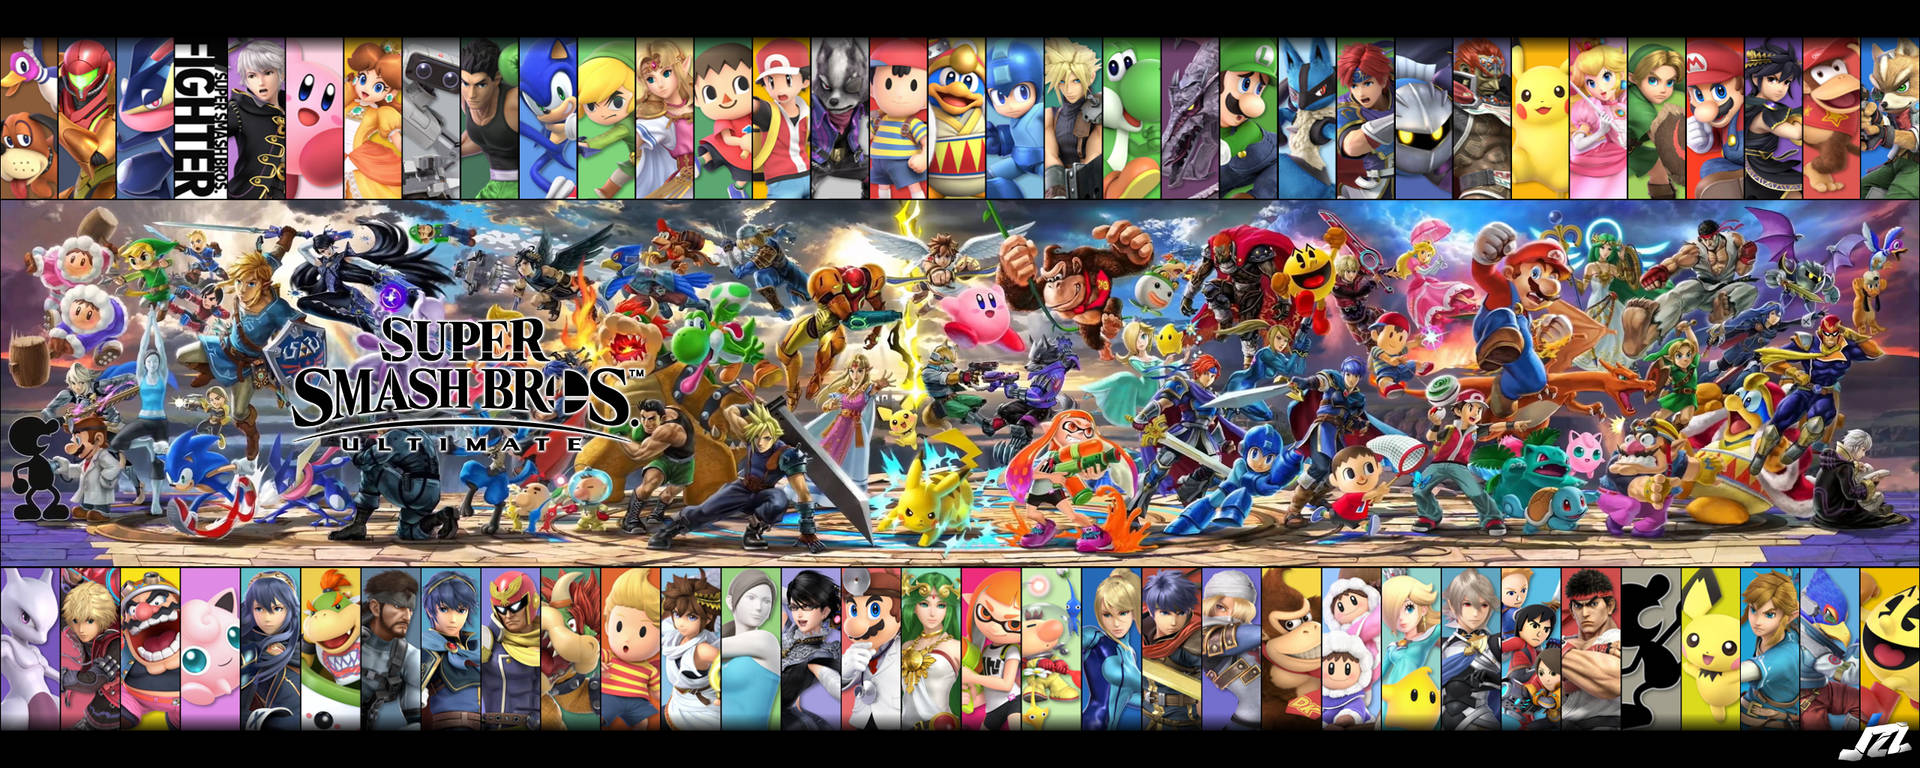 Super Smash Bros Ultimate Hero Banners Wallpaper